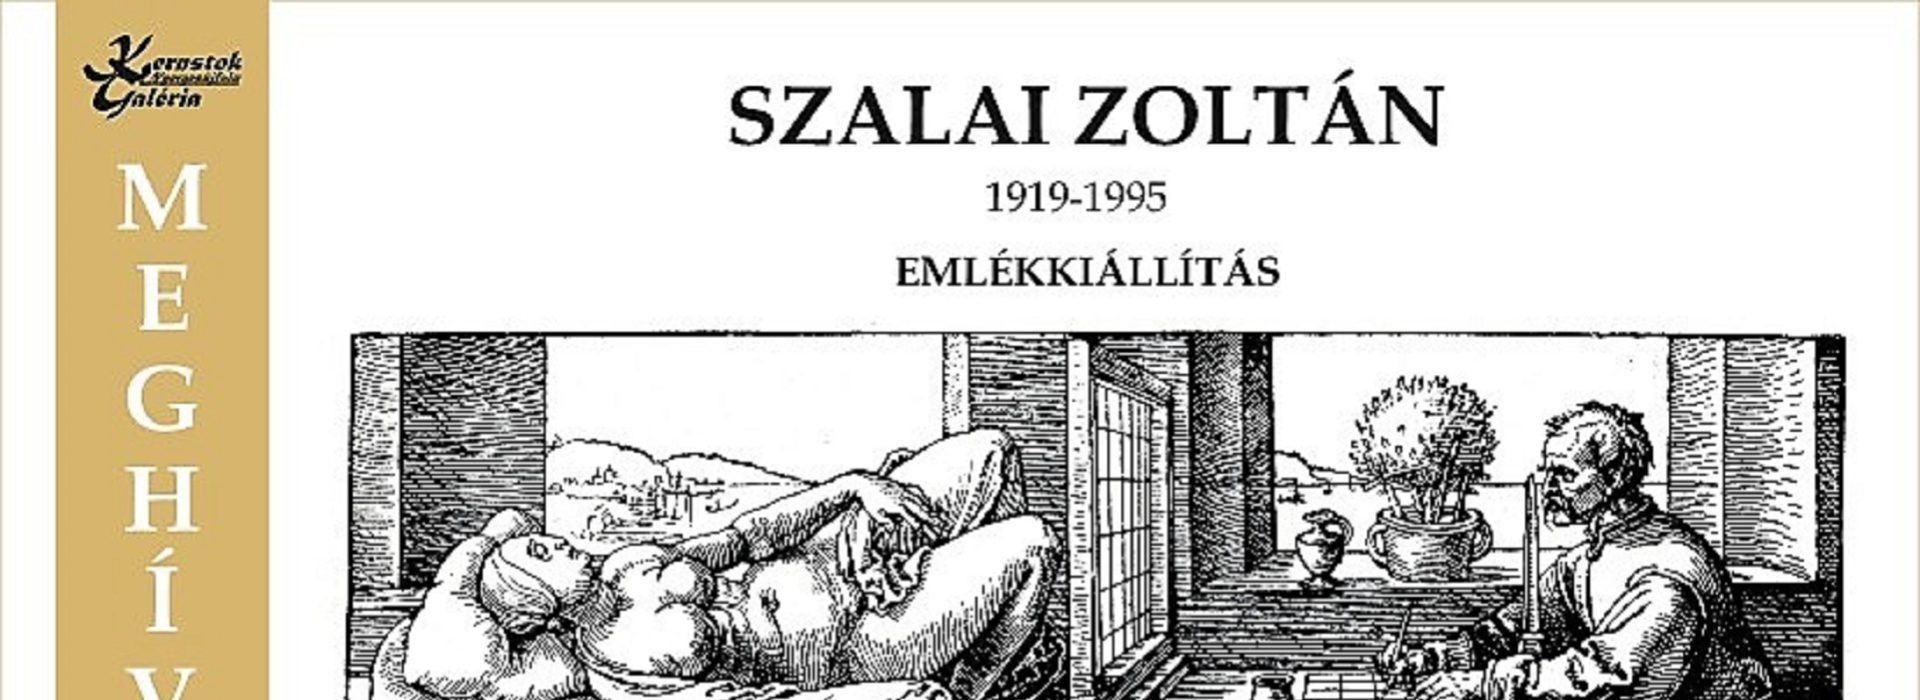 Szalai Zoltán festőművész emlékkiállítása